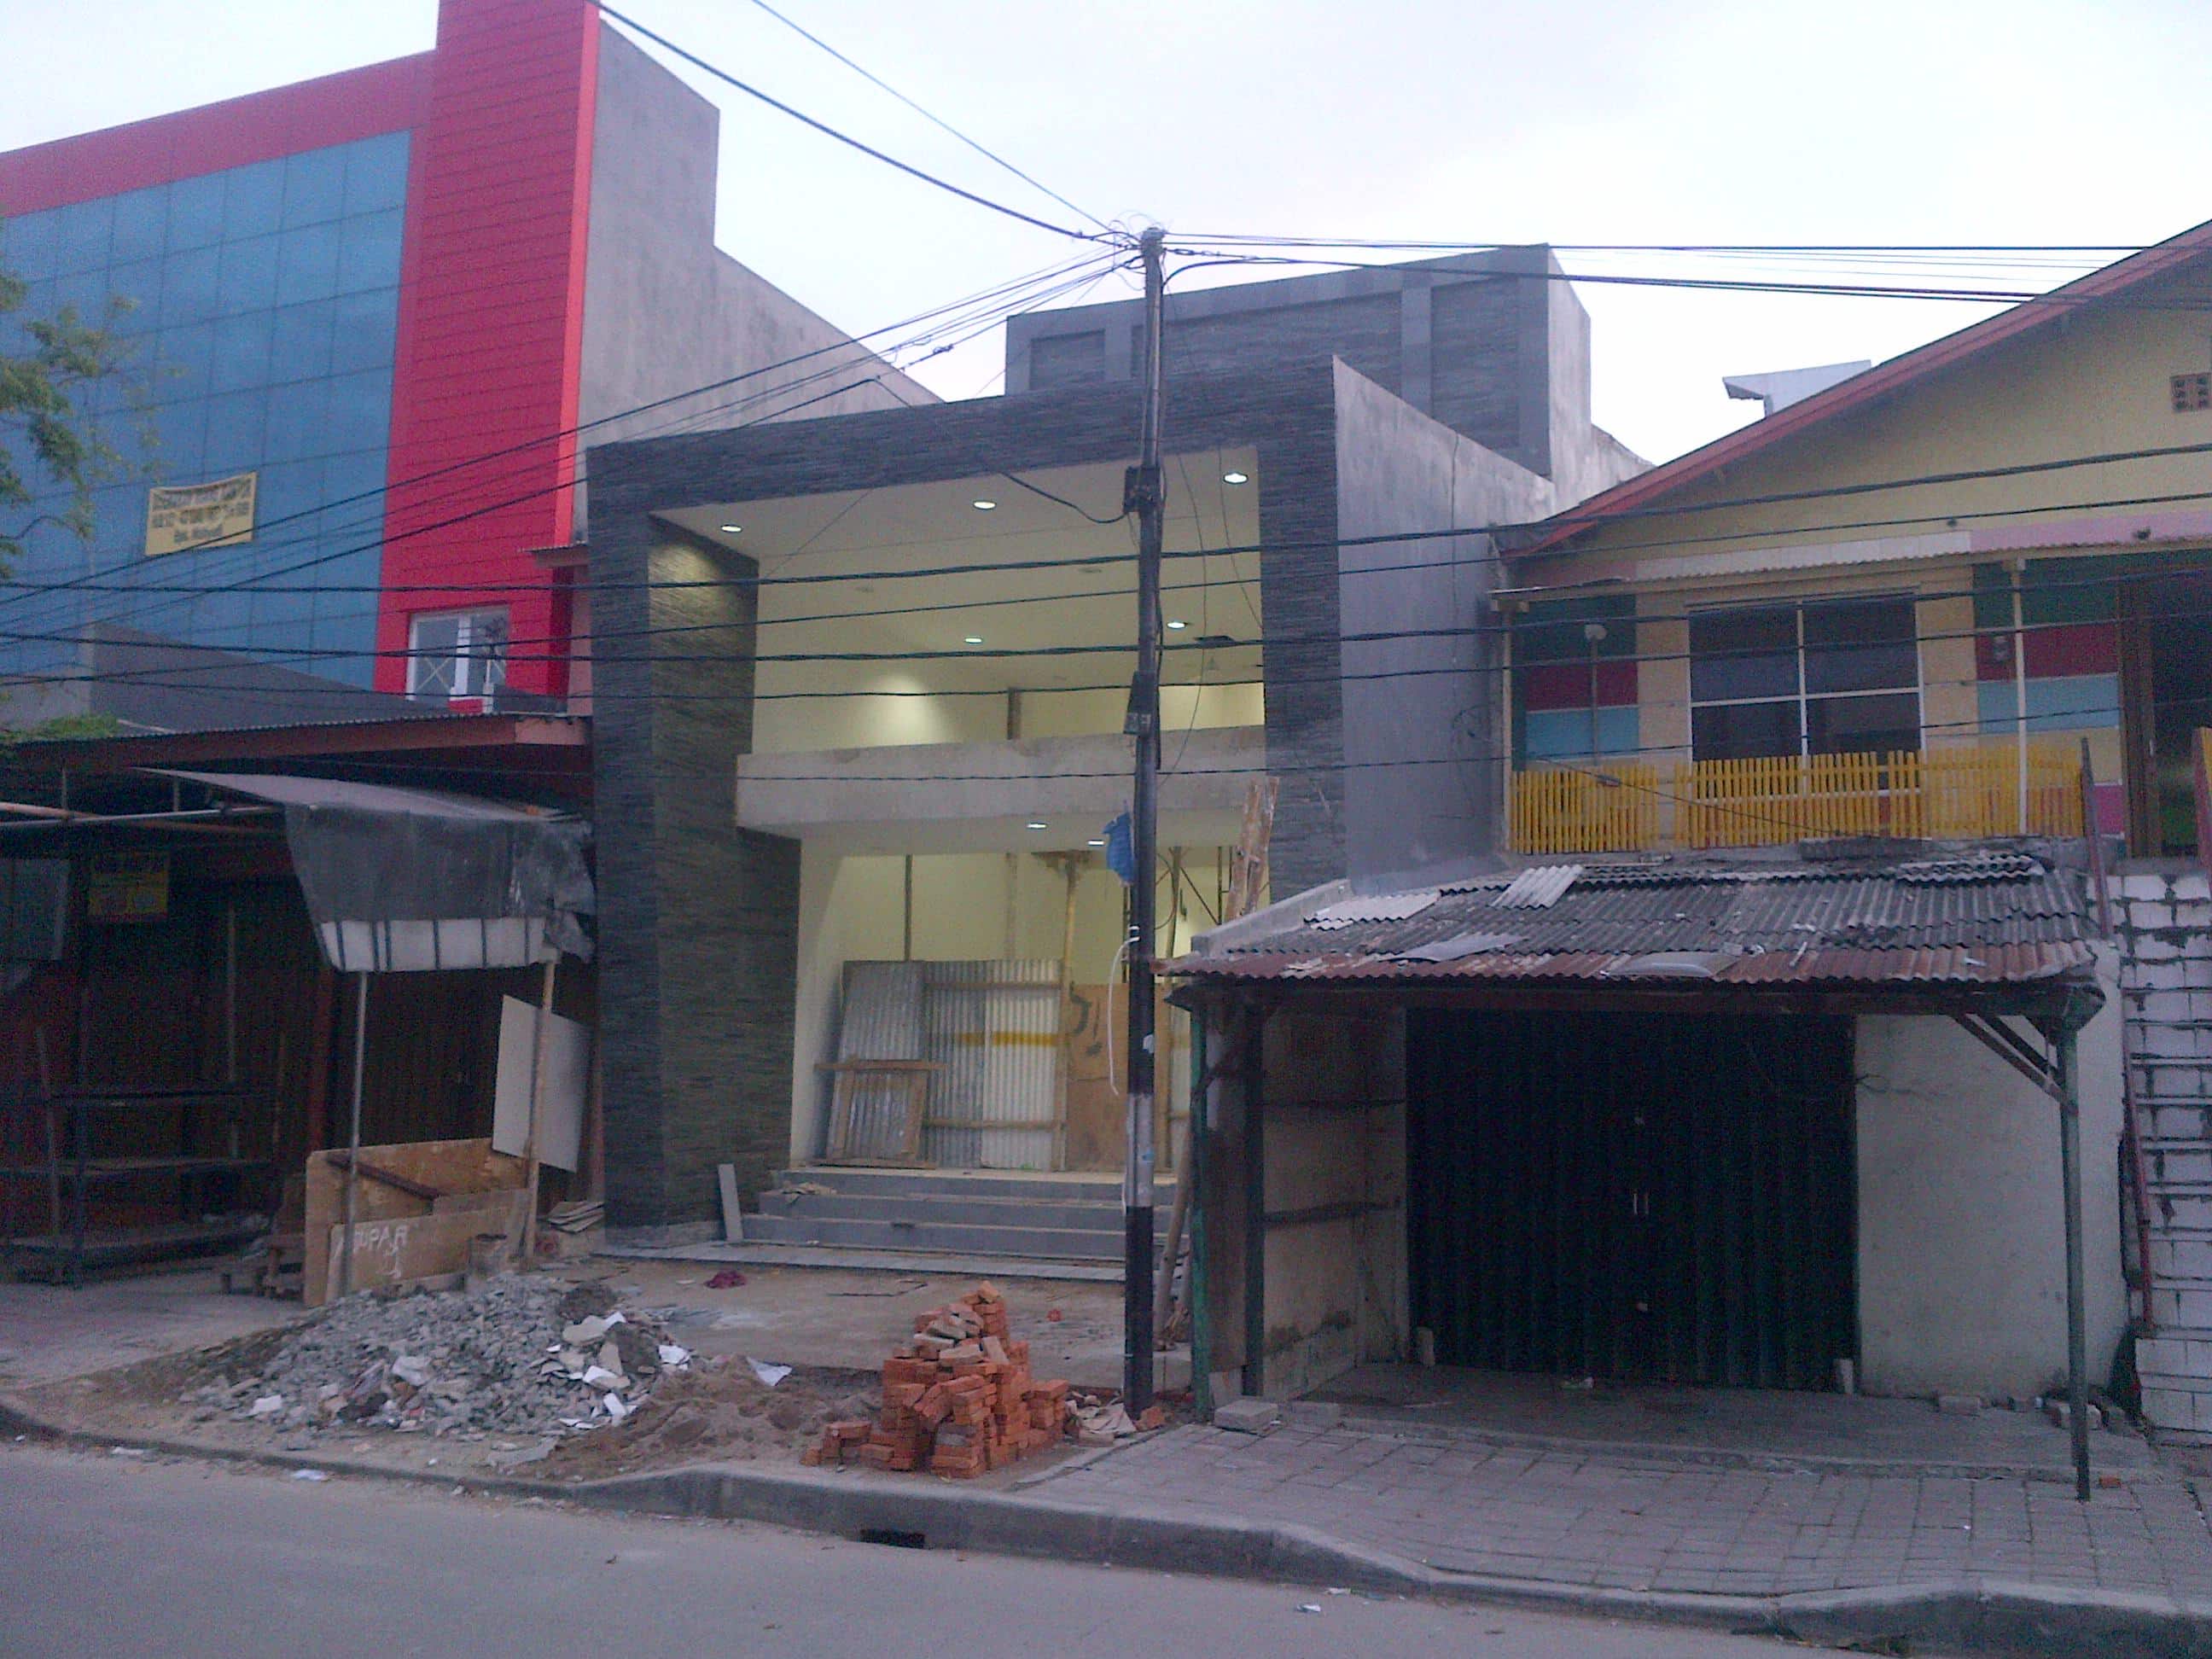 Jasa Kontraktor Renovasi Rumah Jakarta Utara, 081317911017 (Call/WA